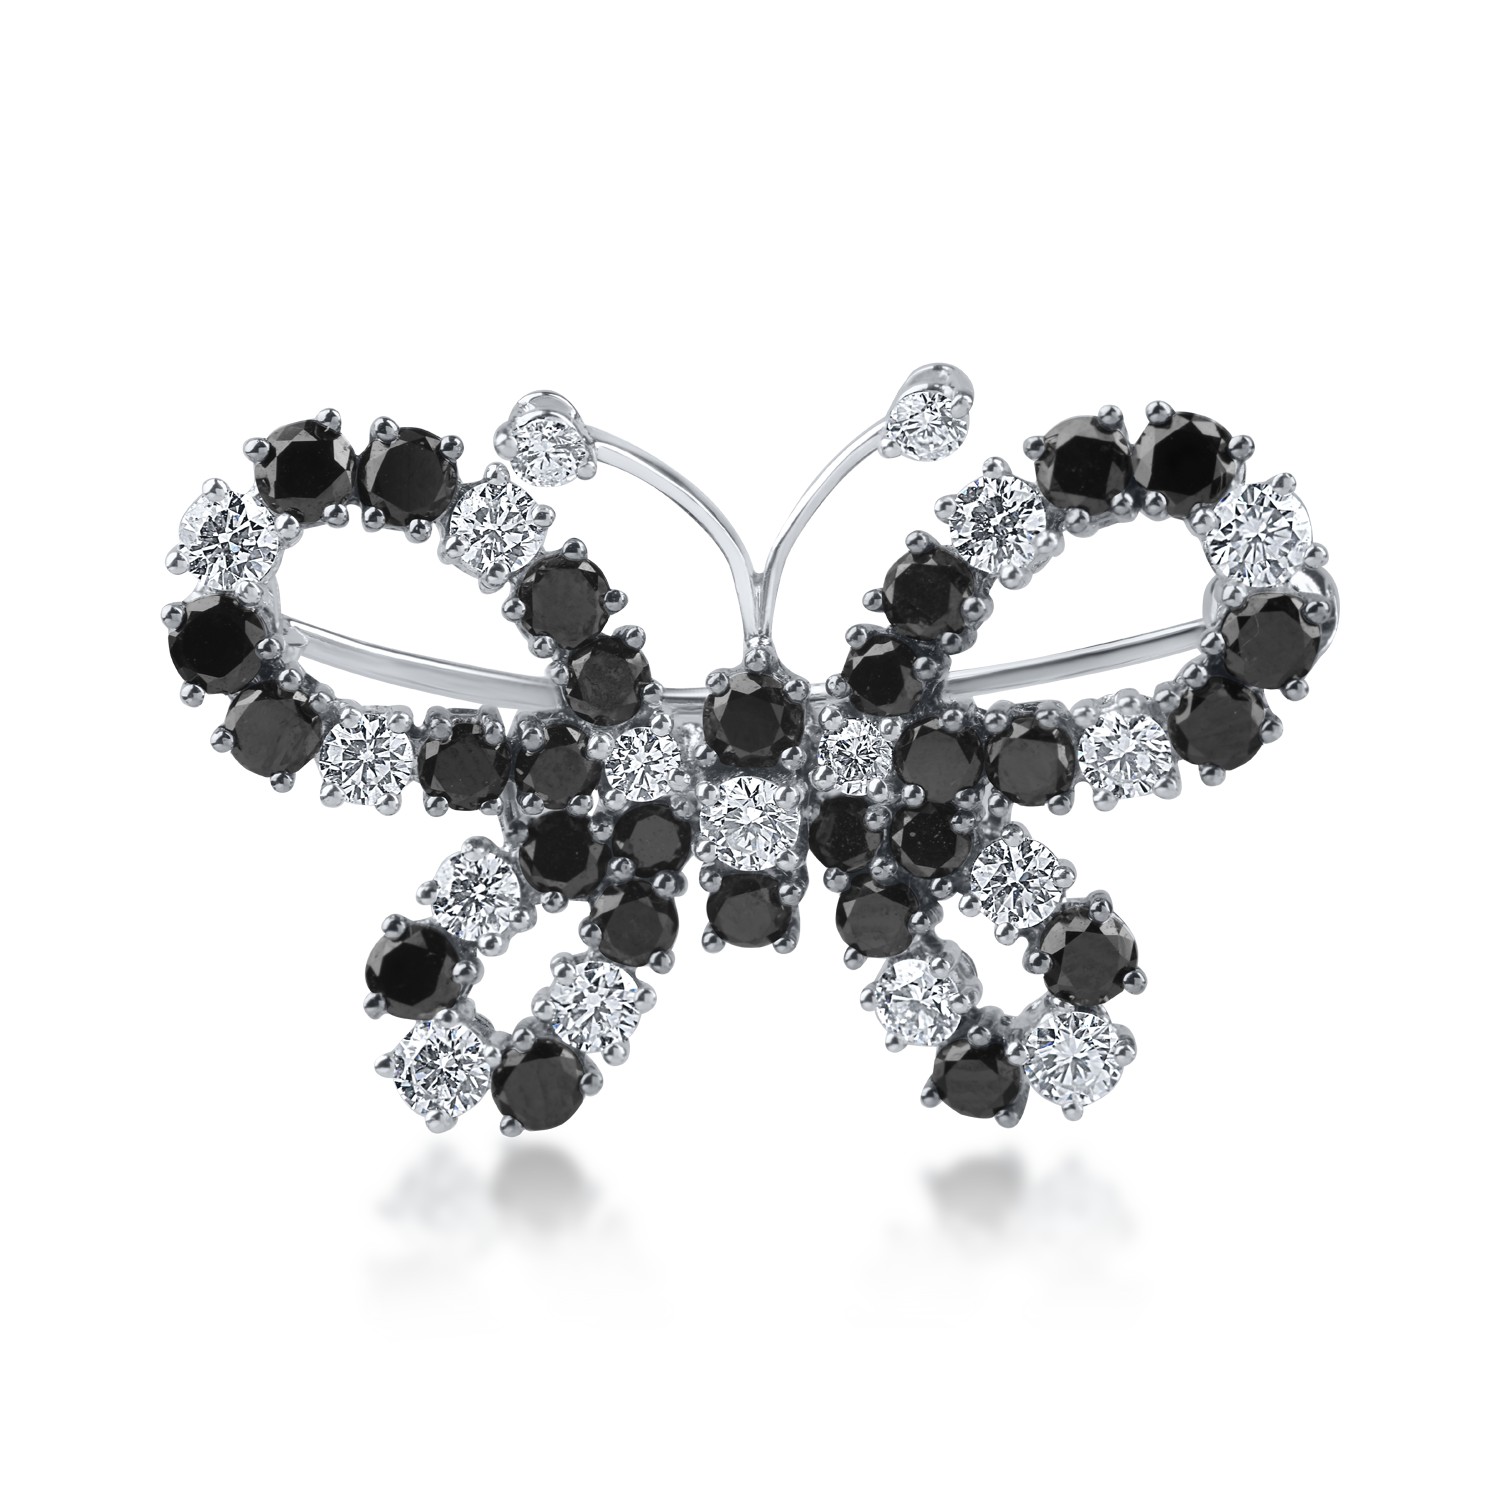 Fehérarany pillangós bross 1.3ct fekete gyémántokkal és 0.7ct tiszta gyémántokkal